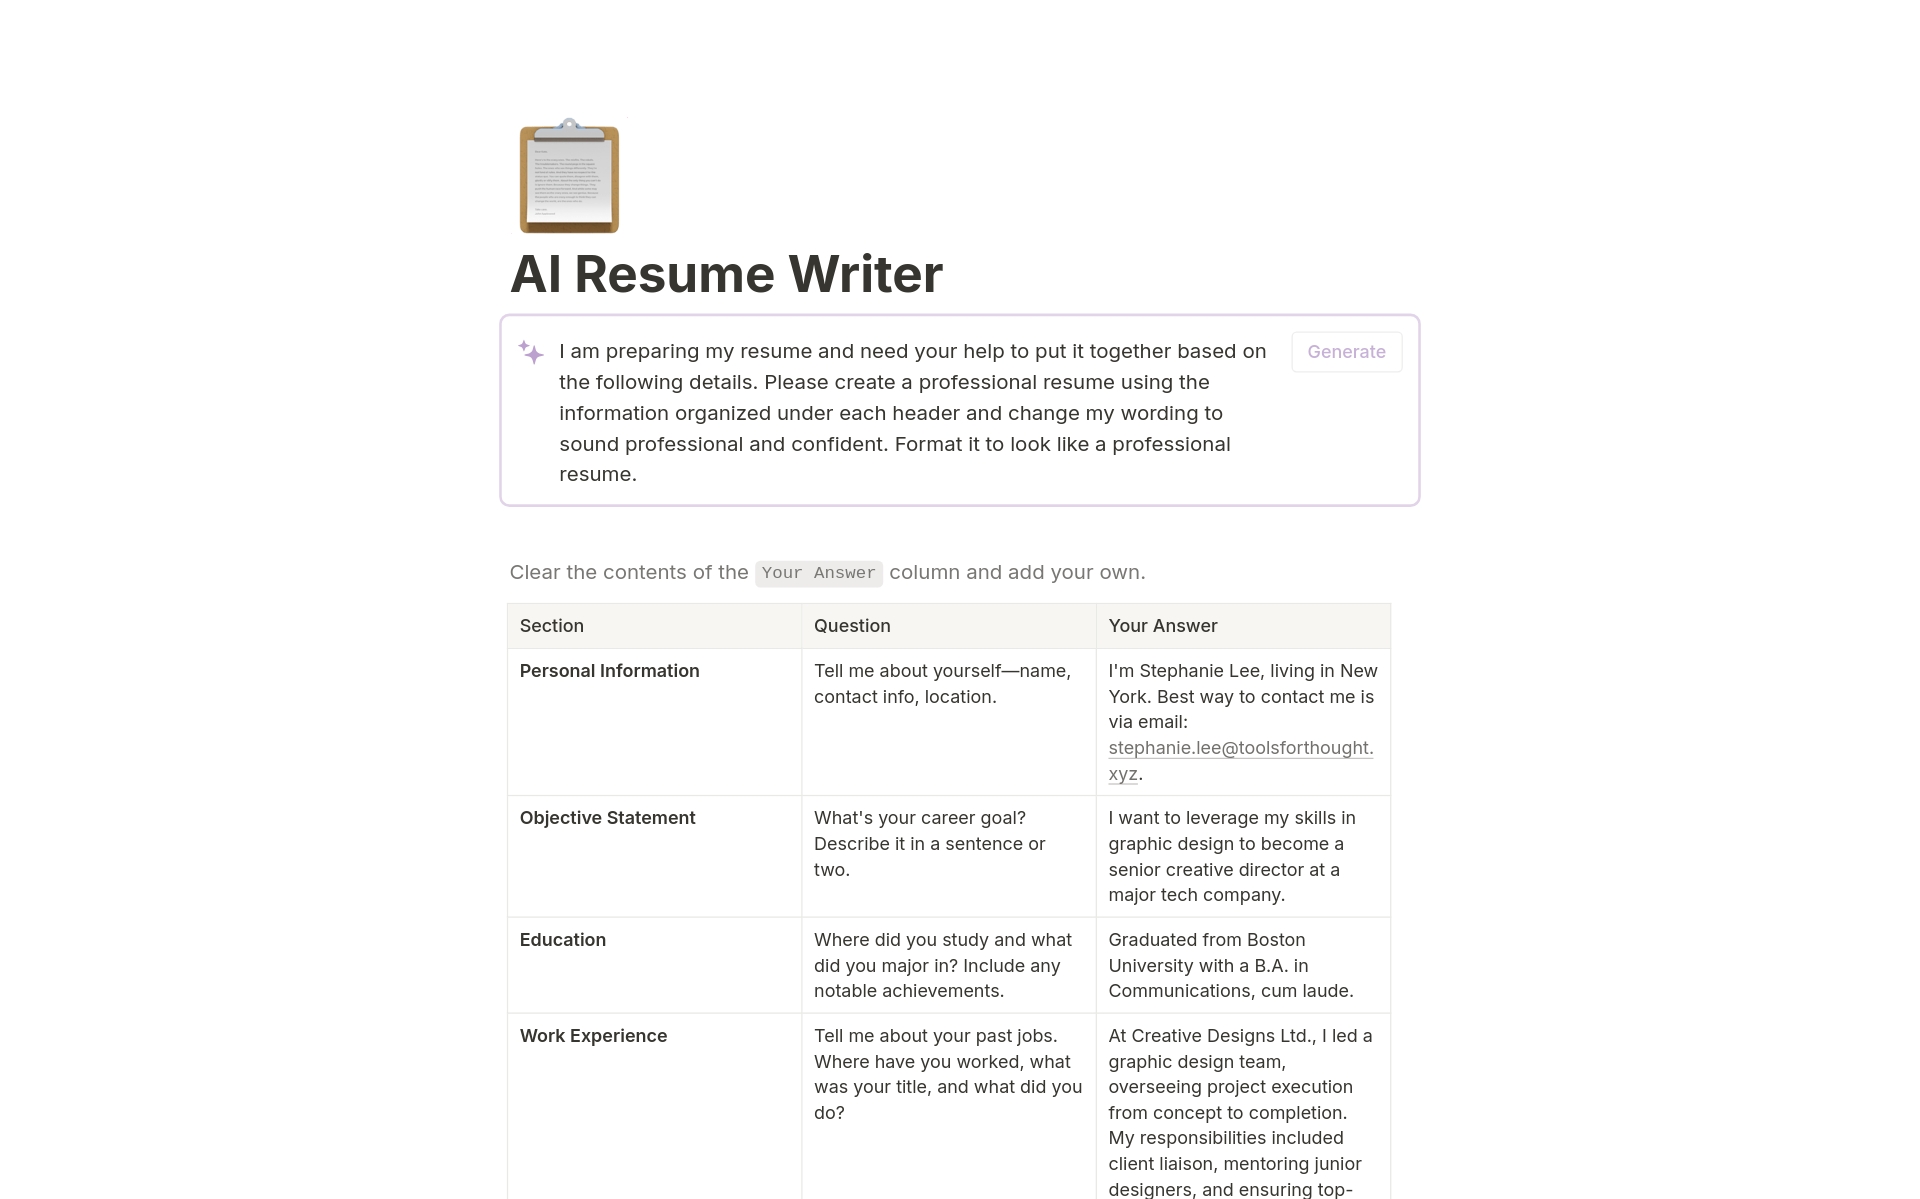 En förhandsgranskning av mallen för AI Resume Writer